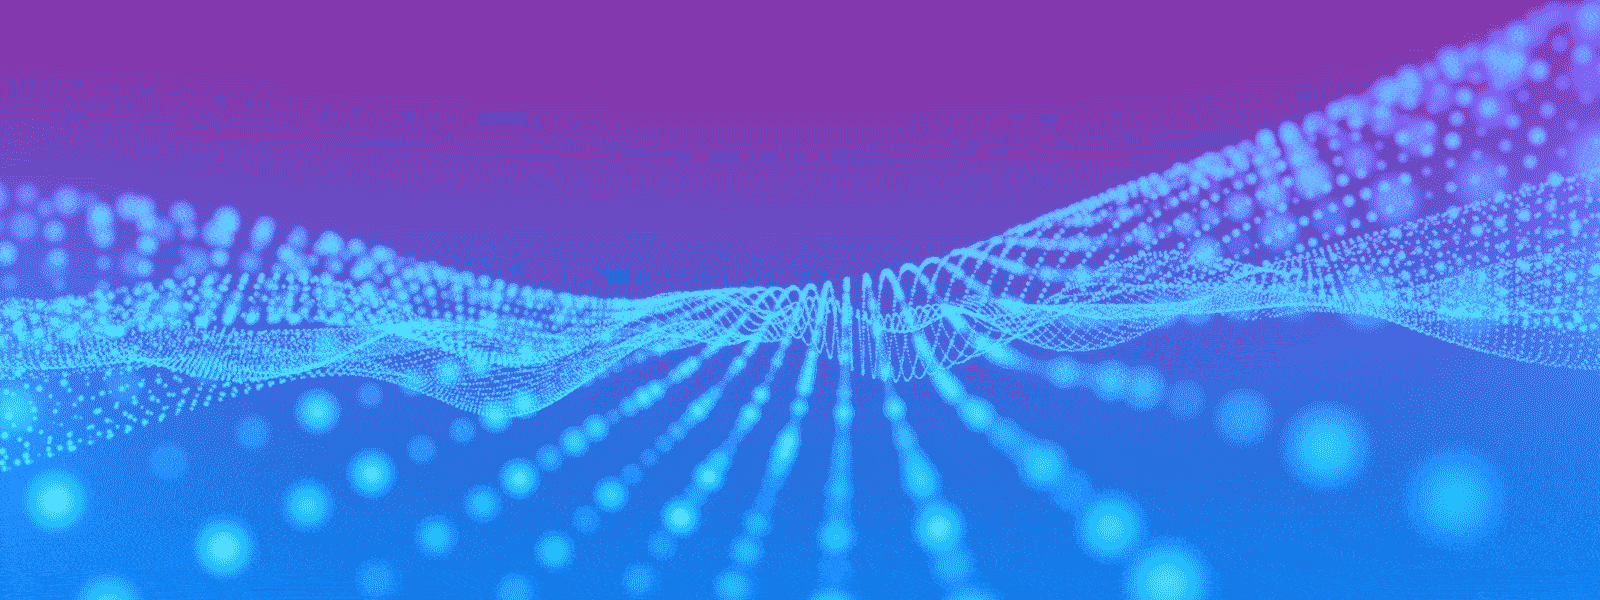 Eine Welle aus Punkten auf blau-violetten Hintergrund.